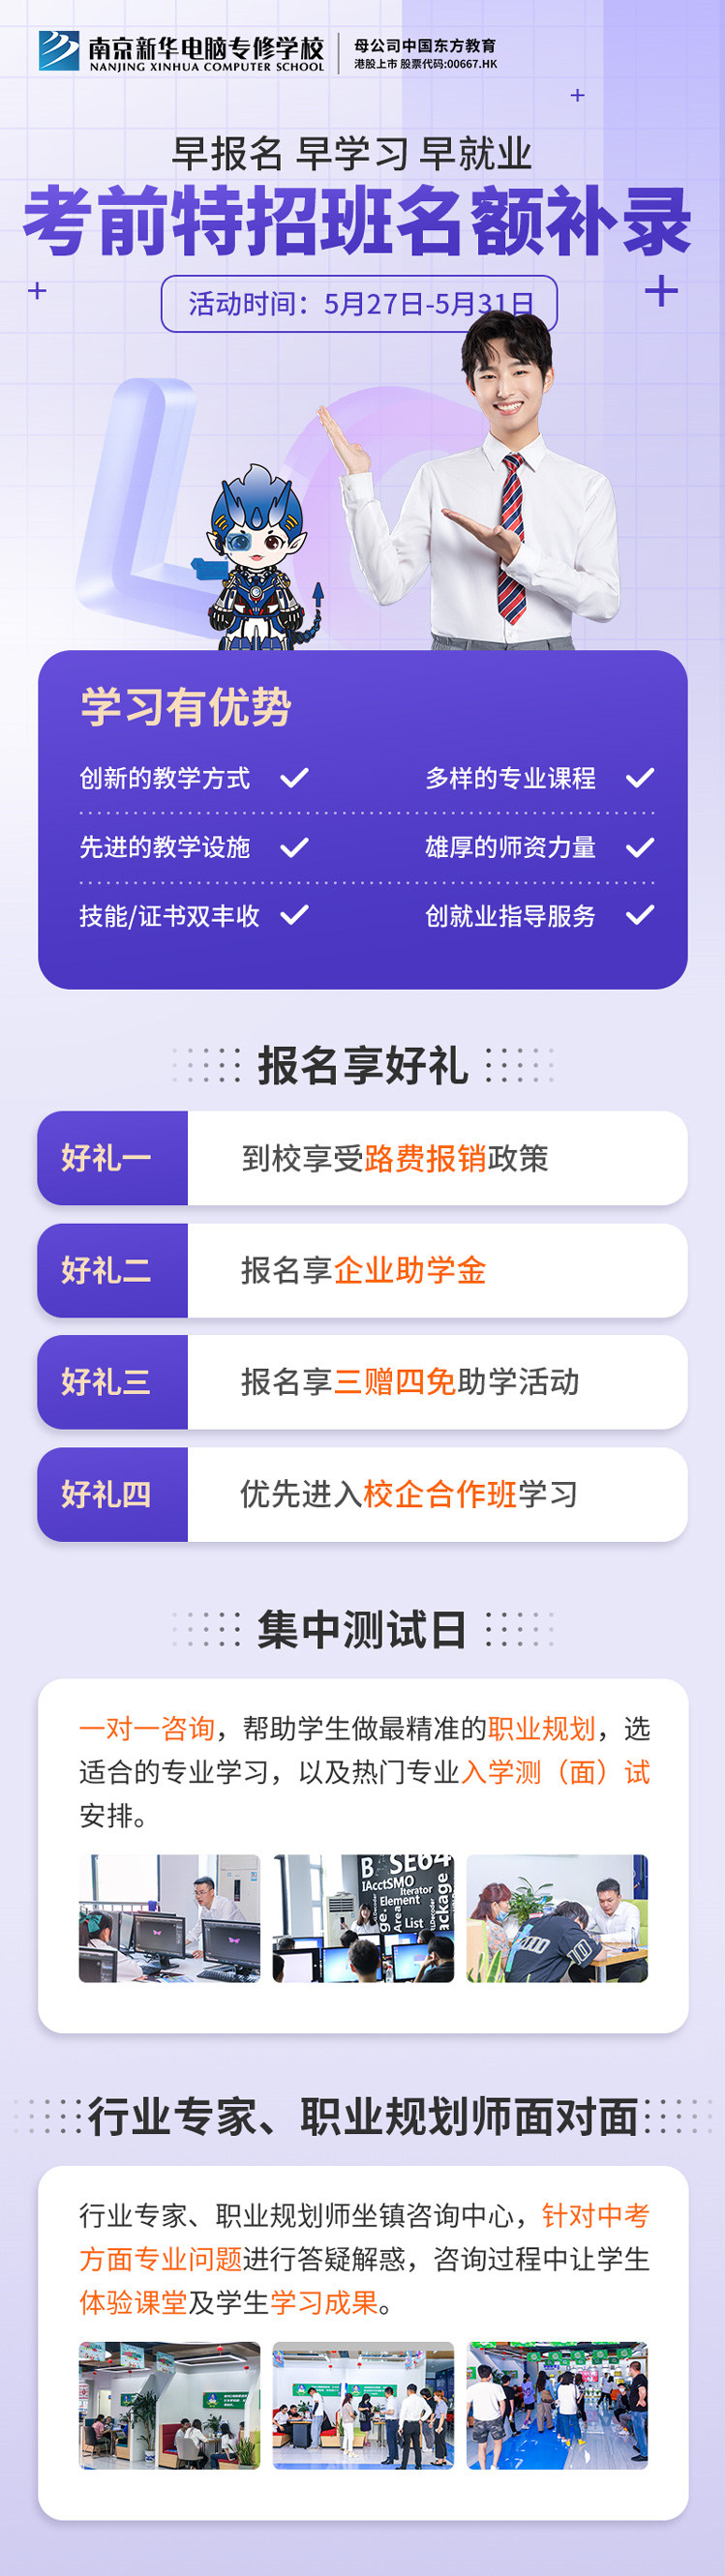 南京新华电脑专修学校考前特招班名额补录正在进行中！